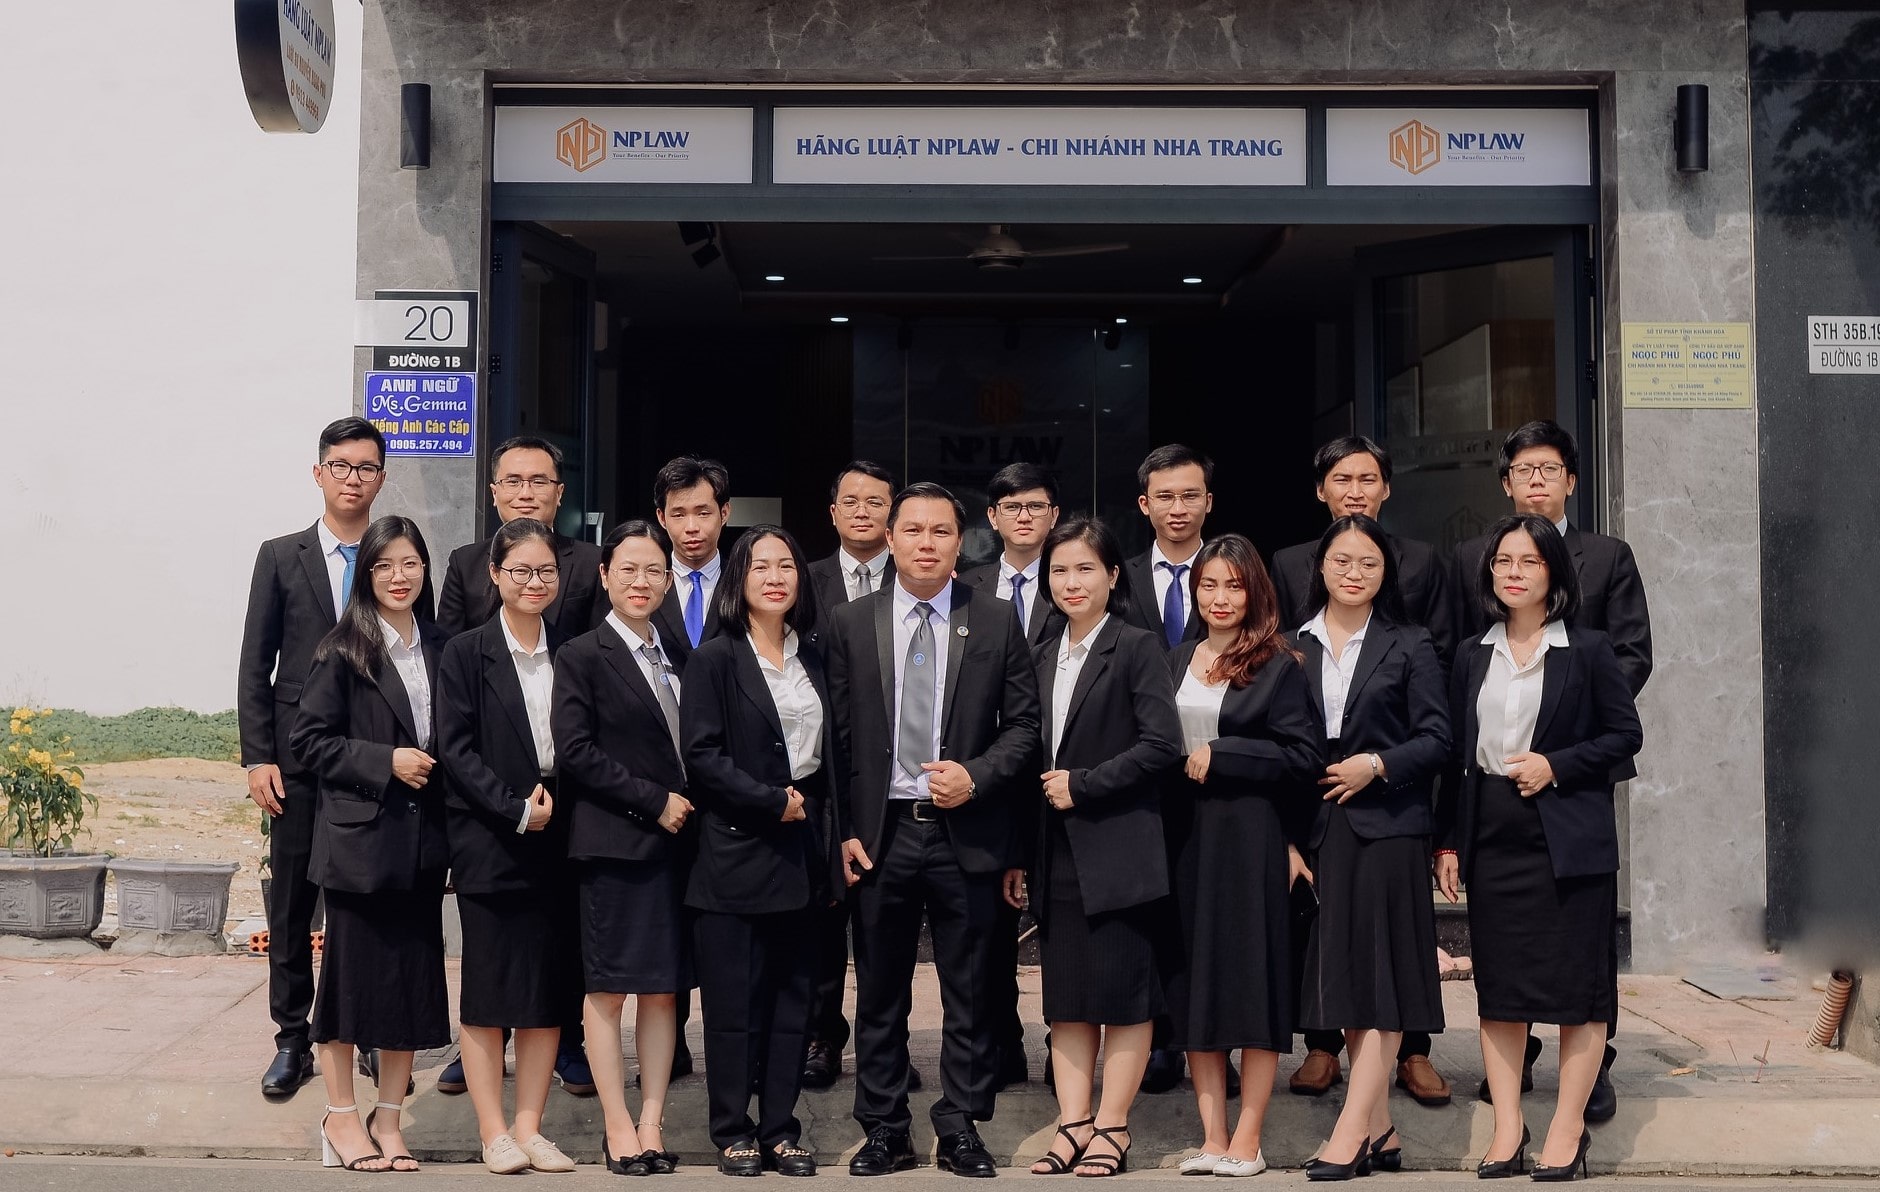 Đội ngũ nhân viên chuyên nghiệp của Hãng Luật NPLaw Chi nhánh Nha Trang